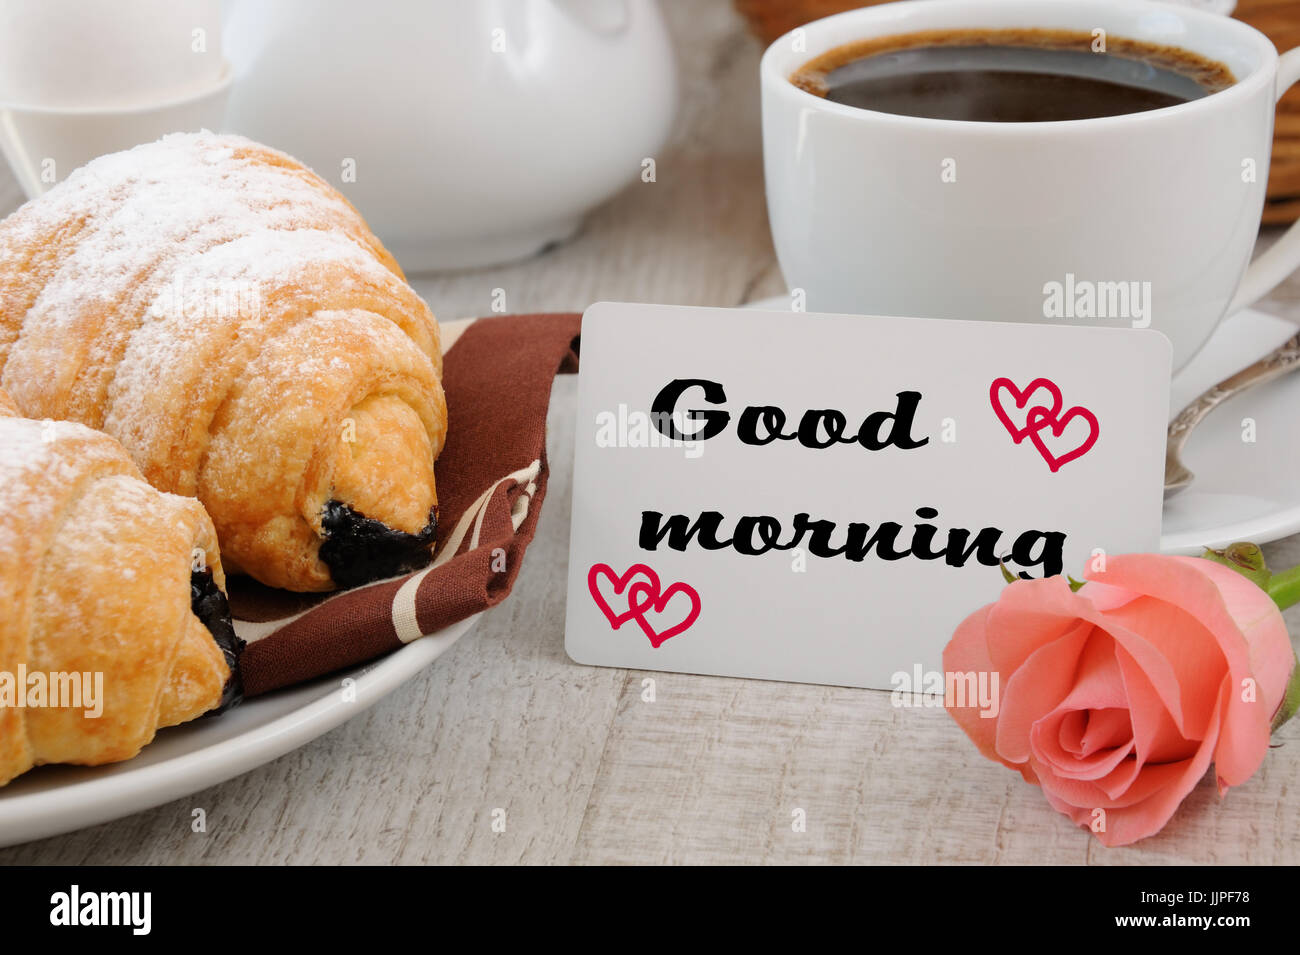 La prima colazione con croissant al cioccolato la coppa di riempimento di prodotti freschi caffè la mattina e una scheda con un augurio di buona mattina. Foto Stock